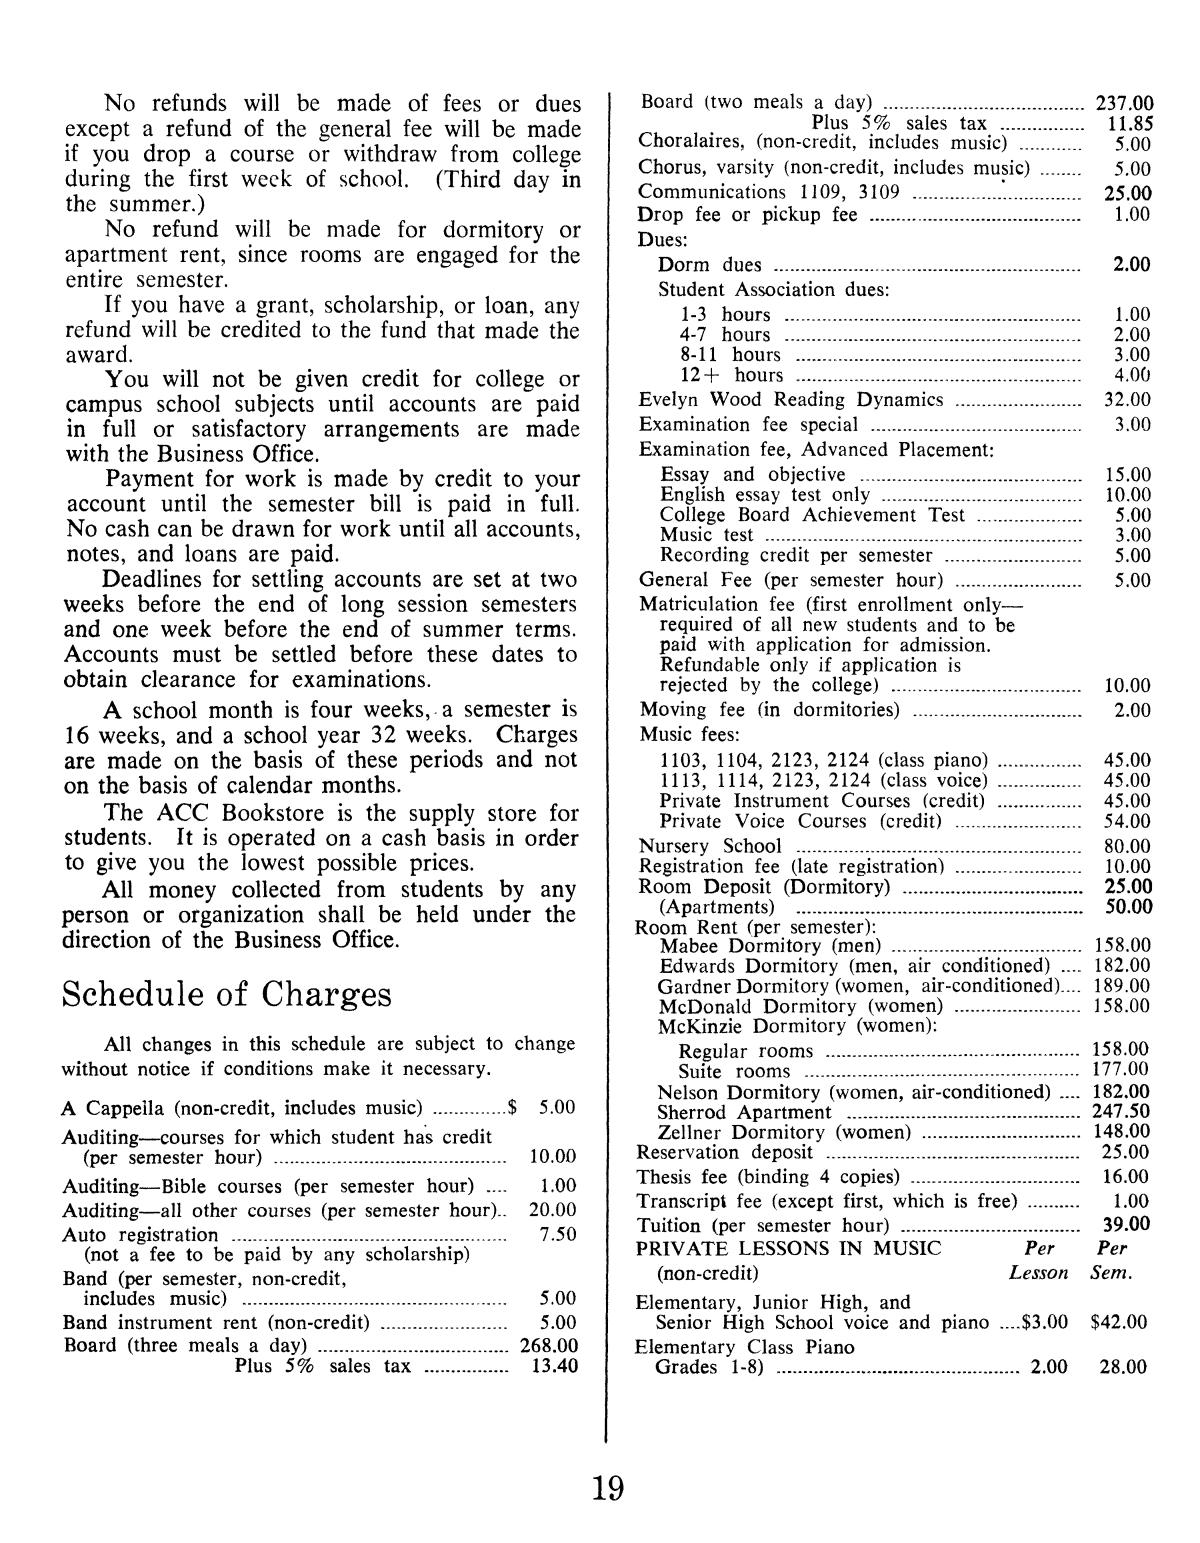 Catalog of Abilene Christian College, 1974-1975
                                                
                                                    19
                                                